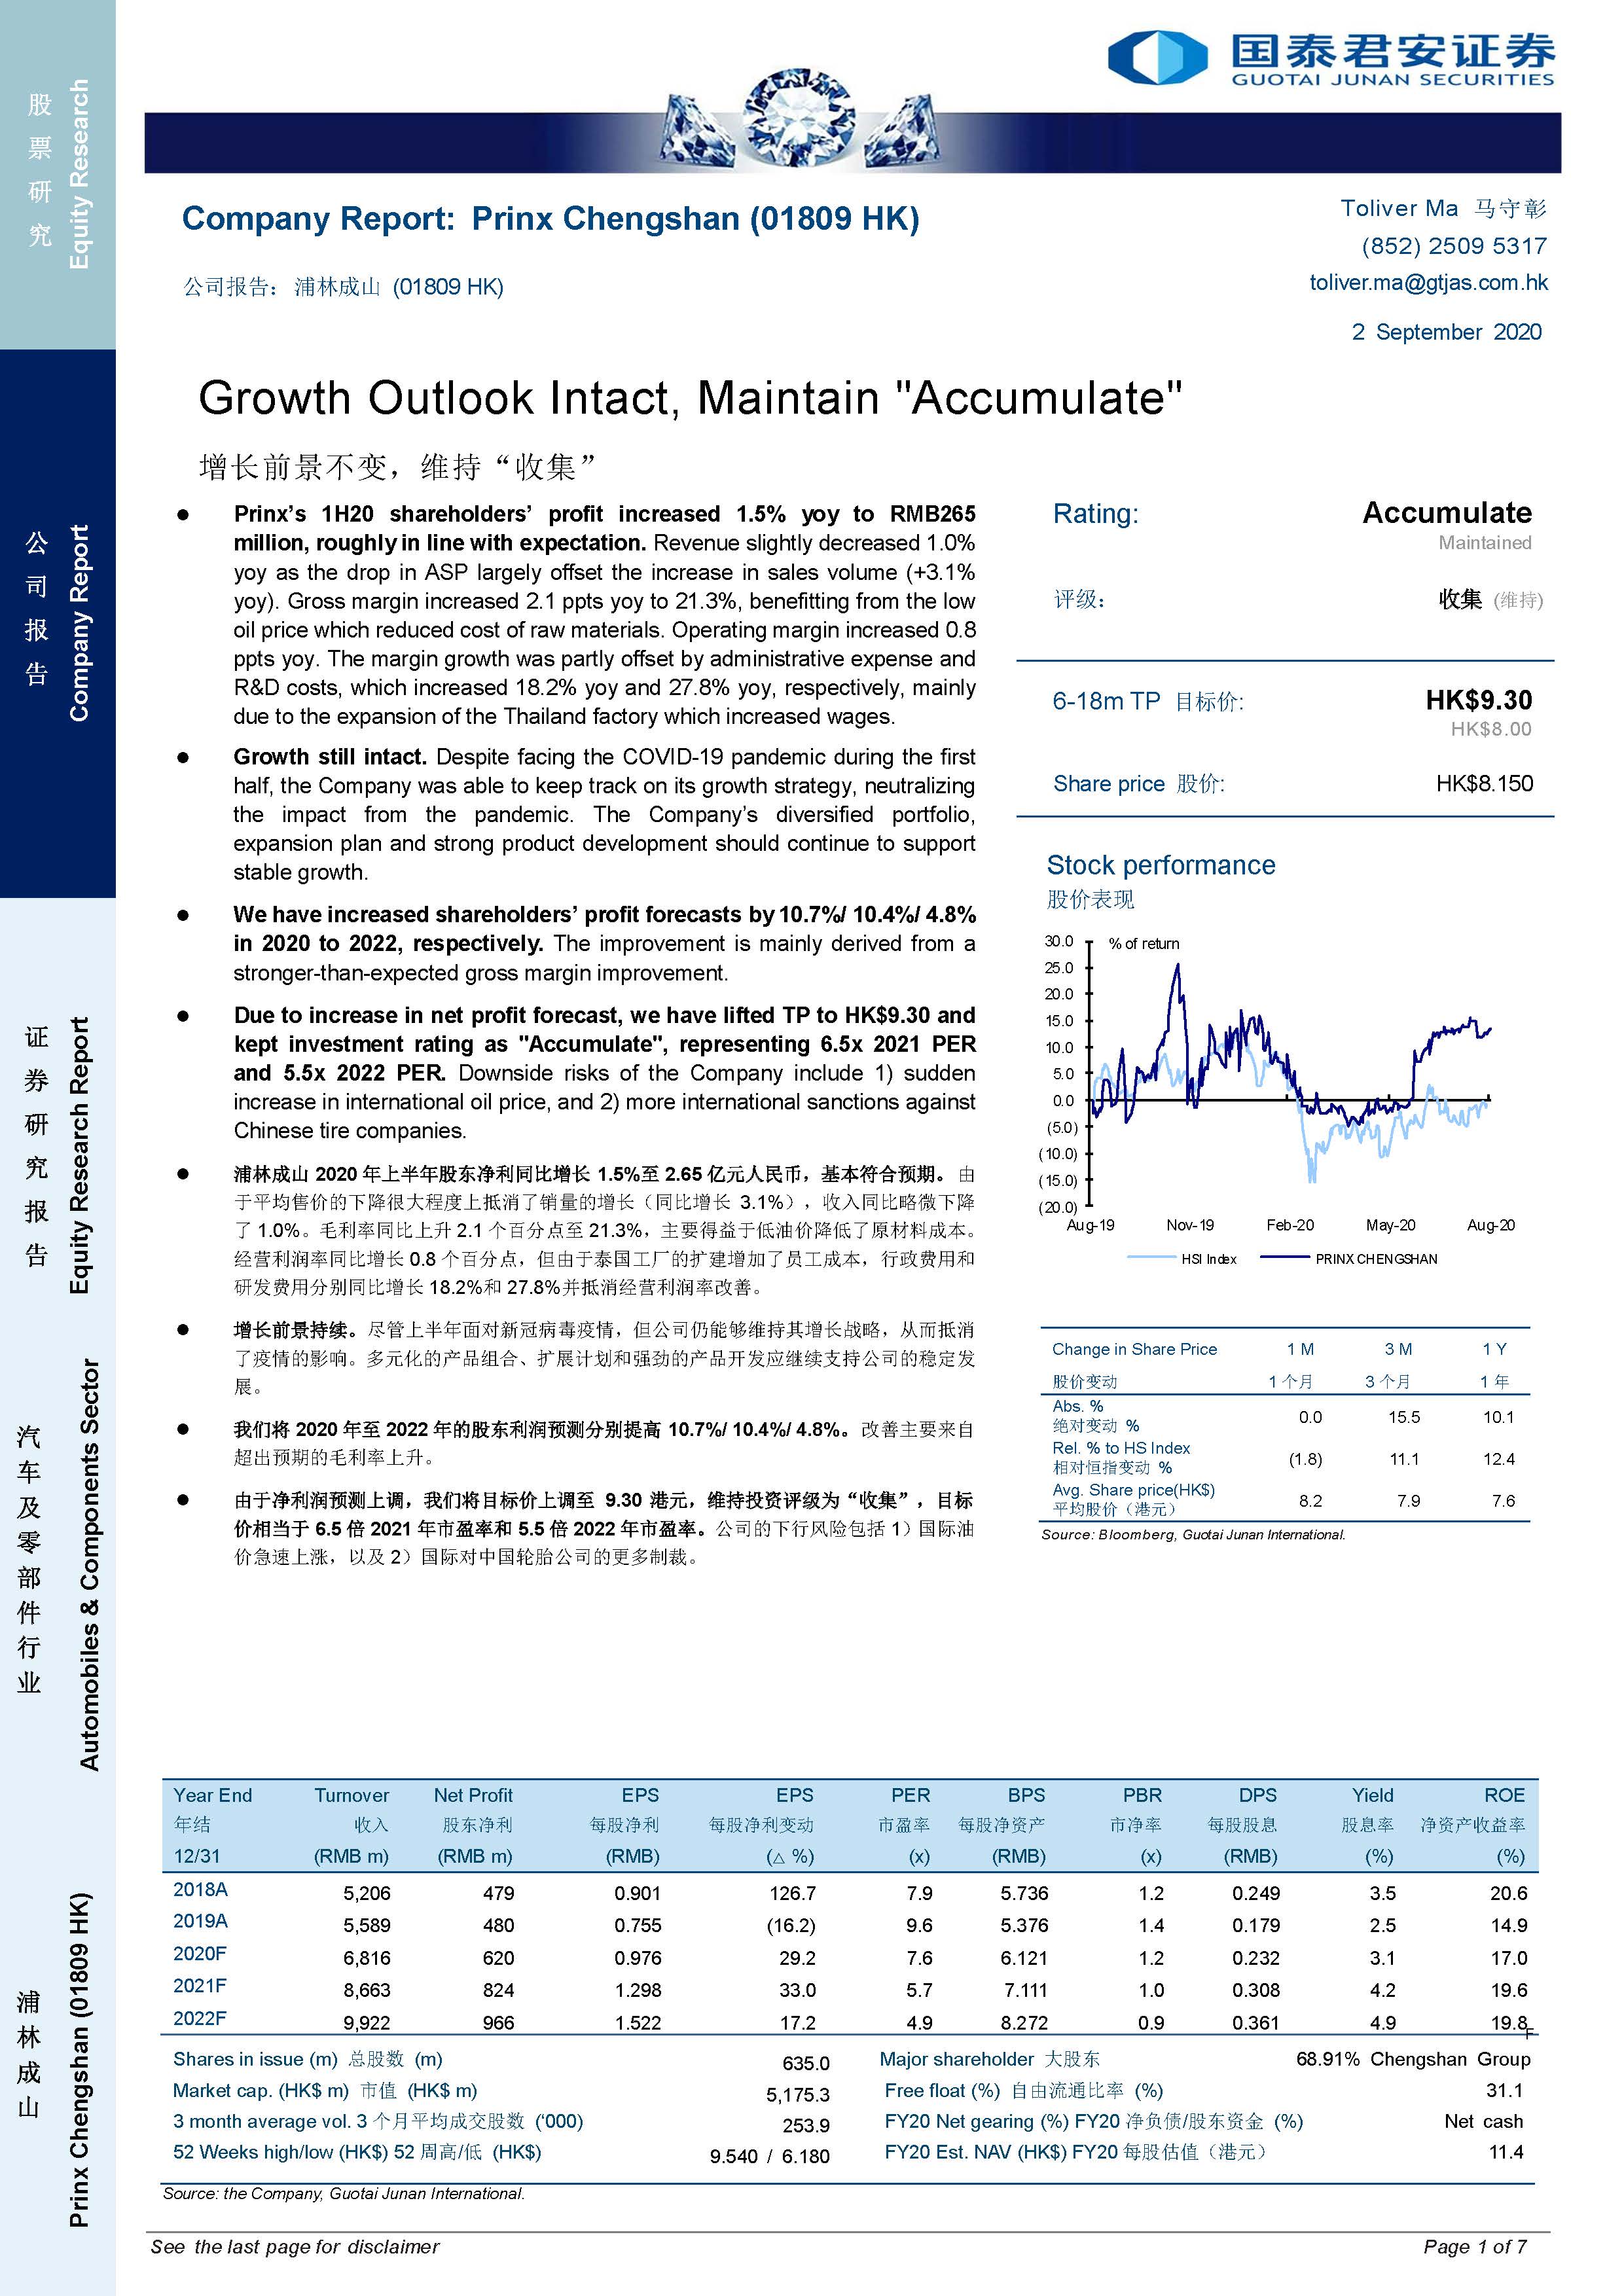 Guotai Junan Securities: Growth Outlook Intact, Maintain "Accumulate"